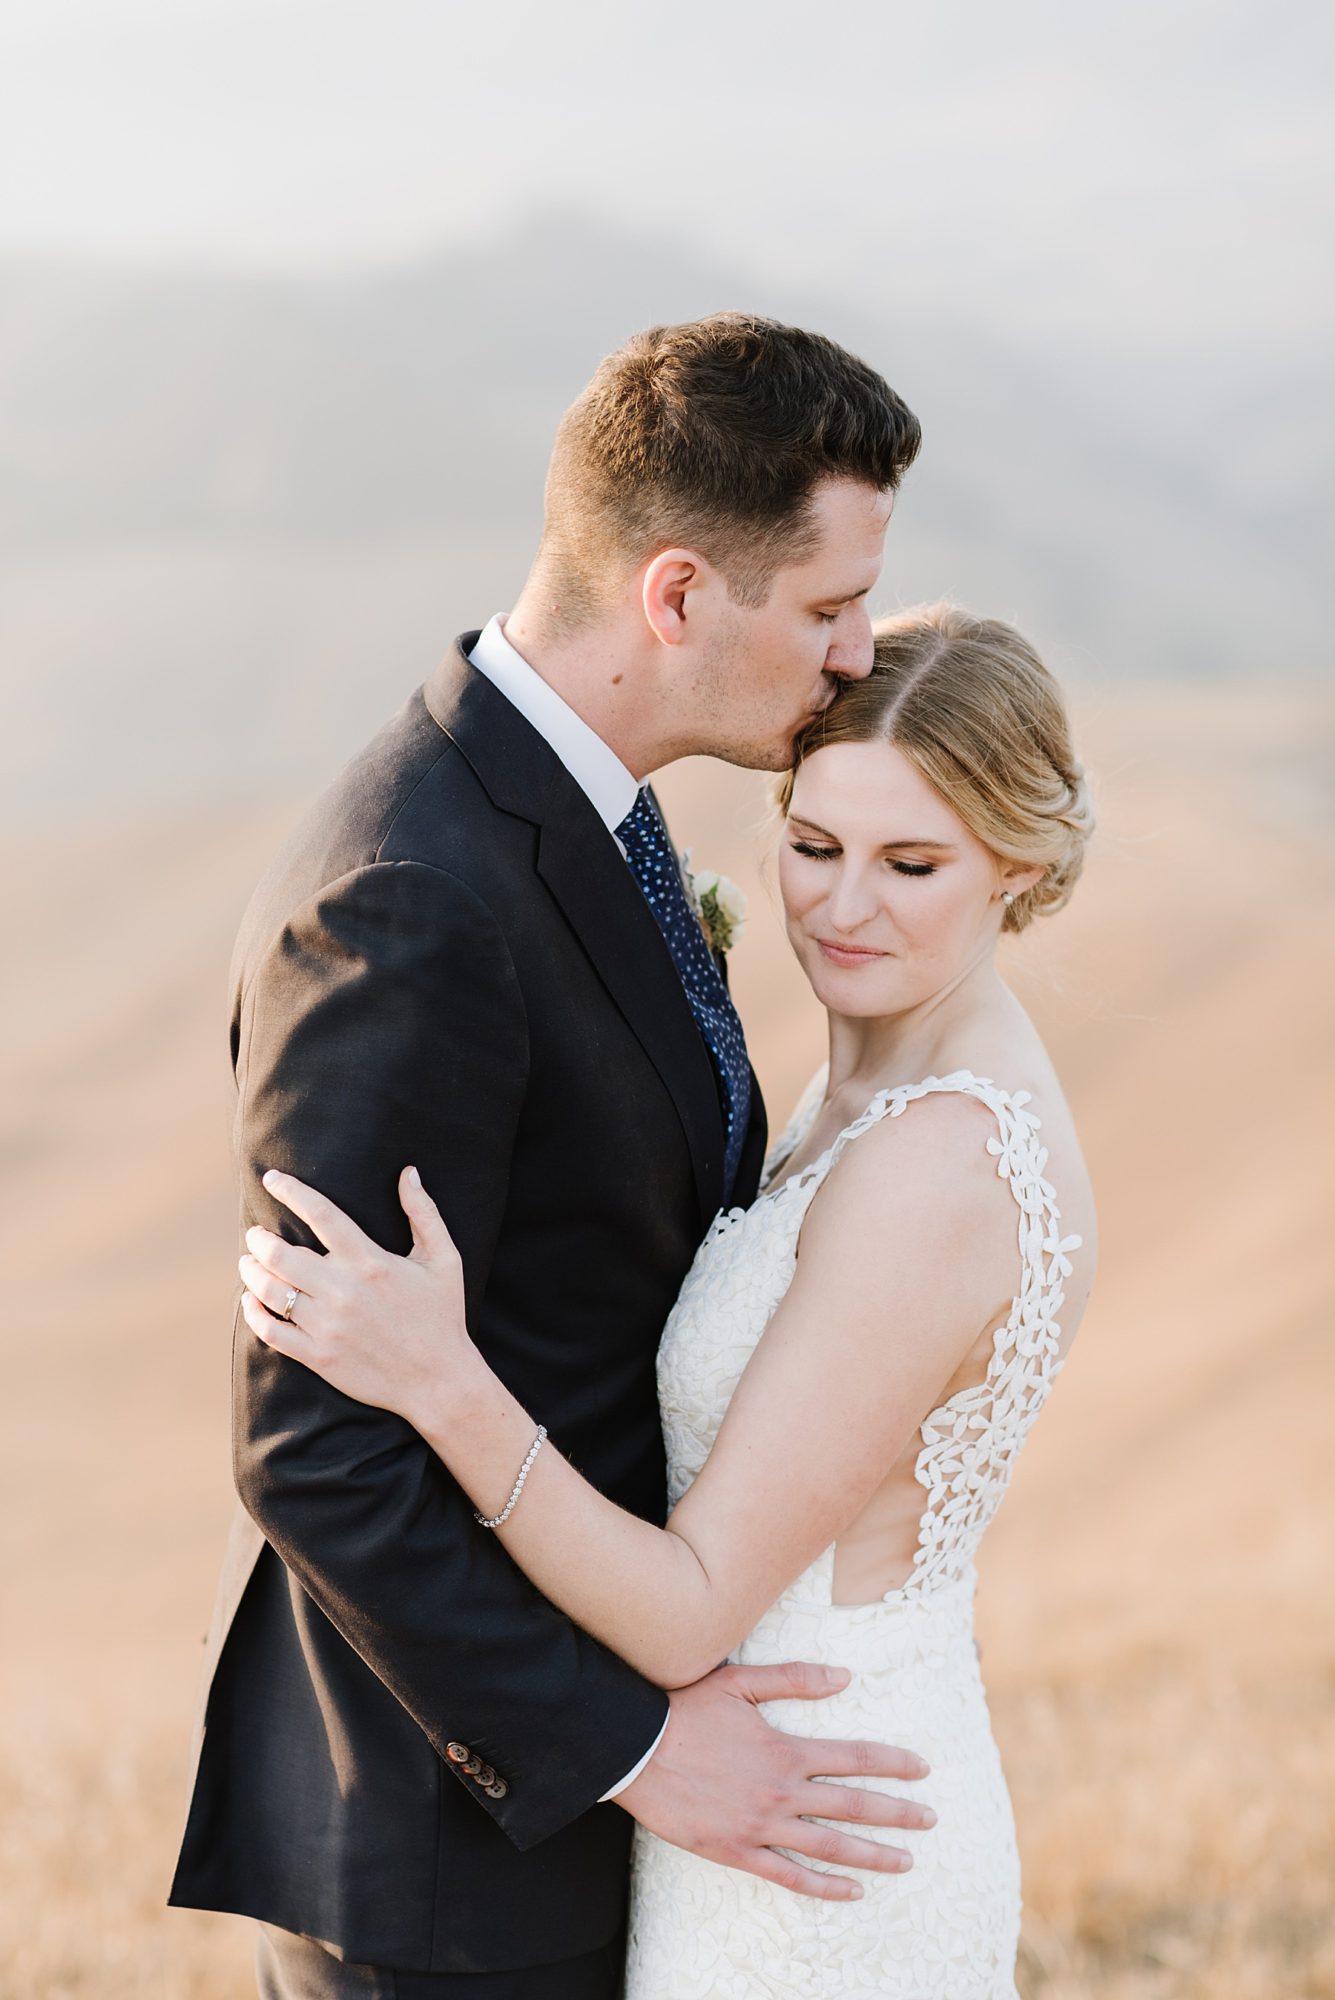 How to pick a wedding photographer | San Luis Obispo Photographer